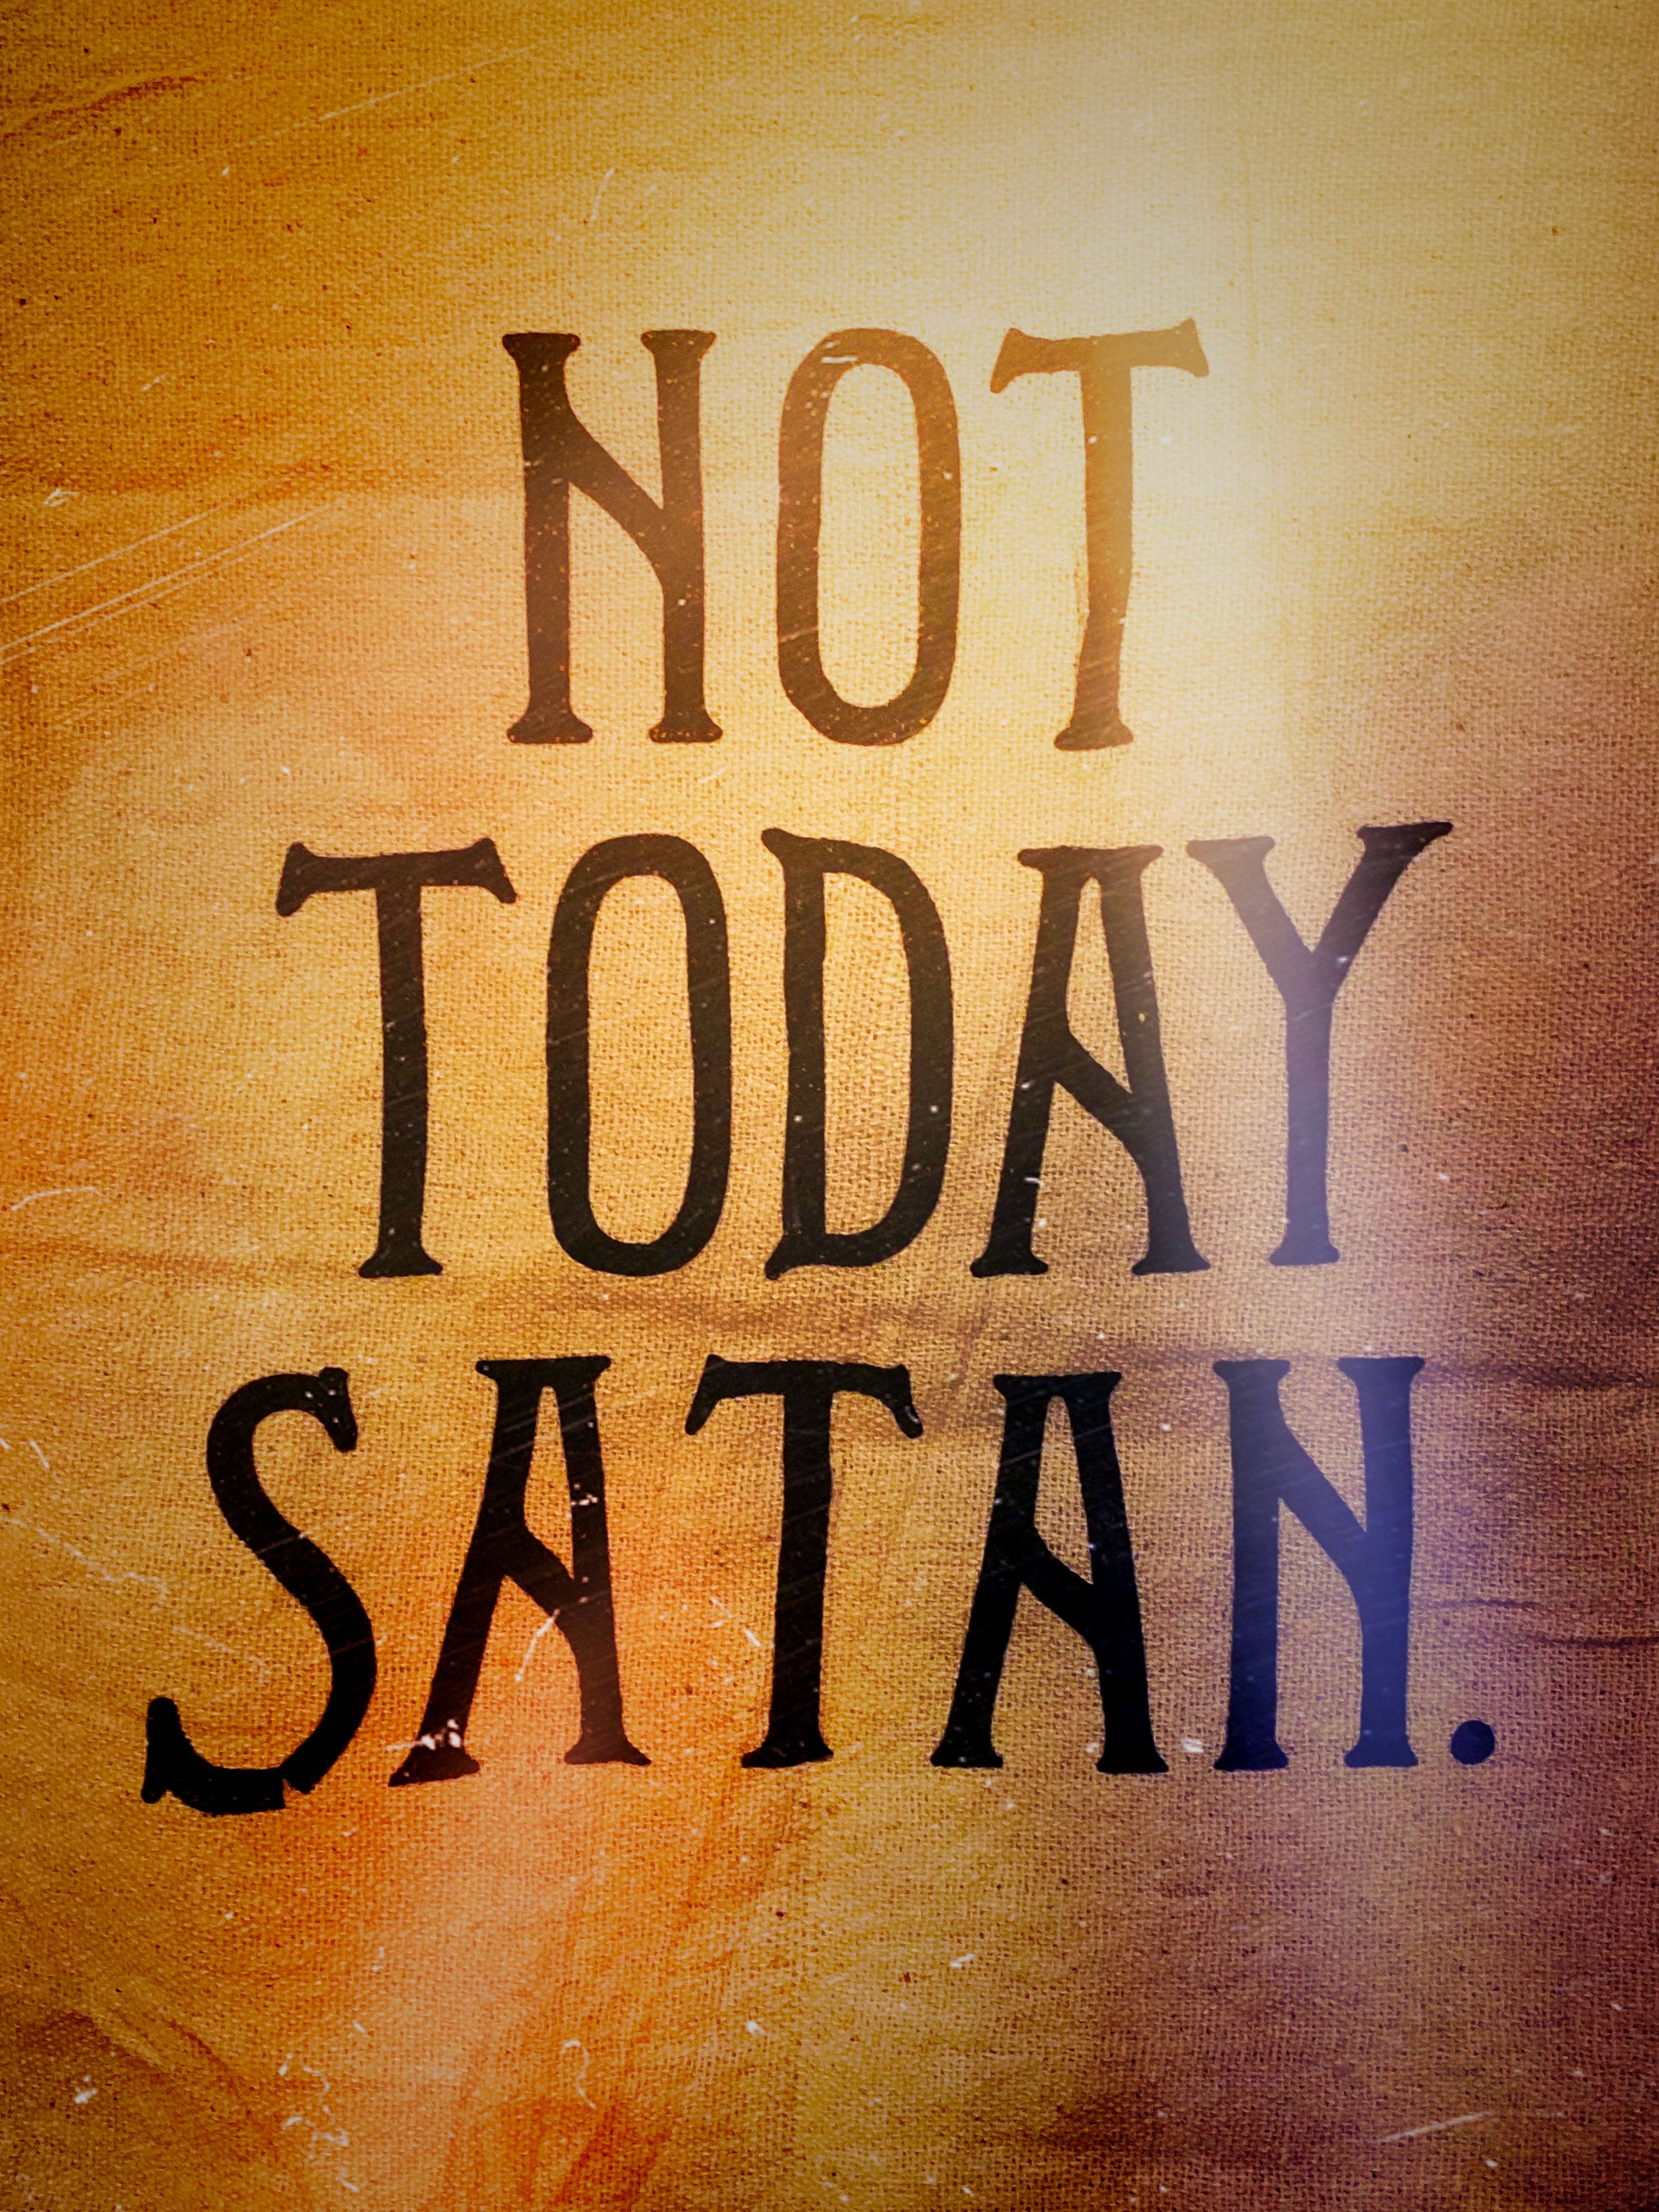 not today satan text photo